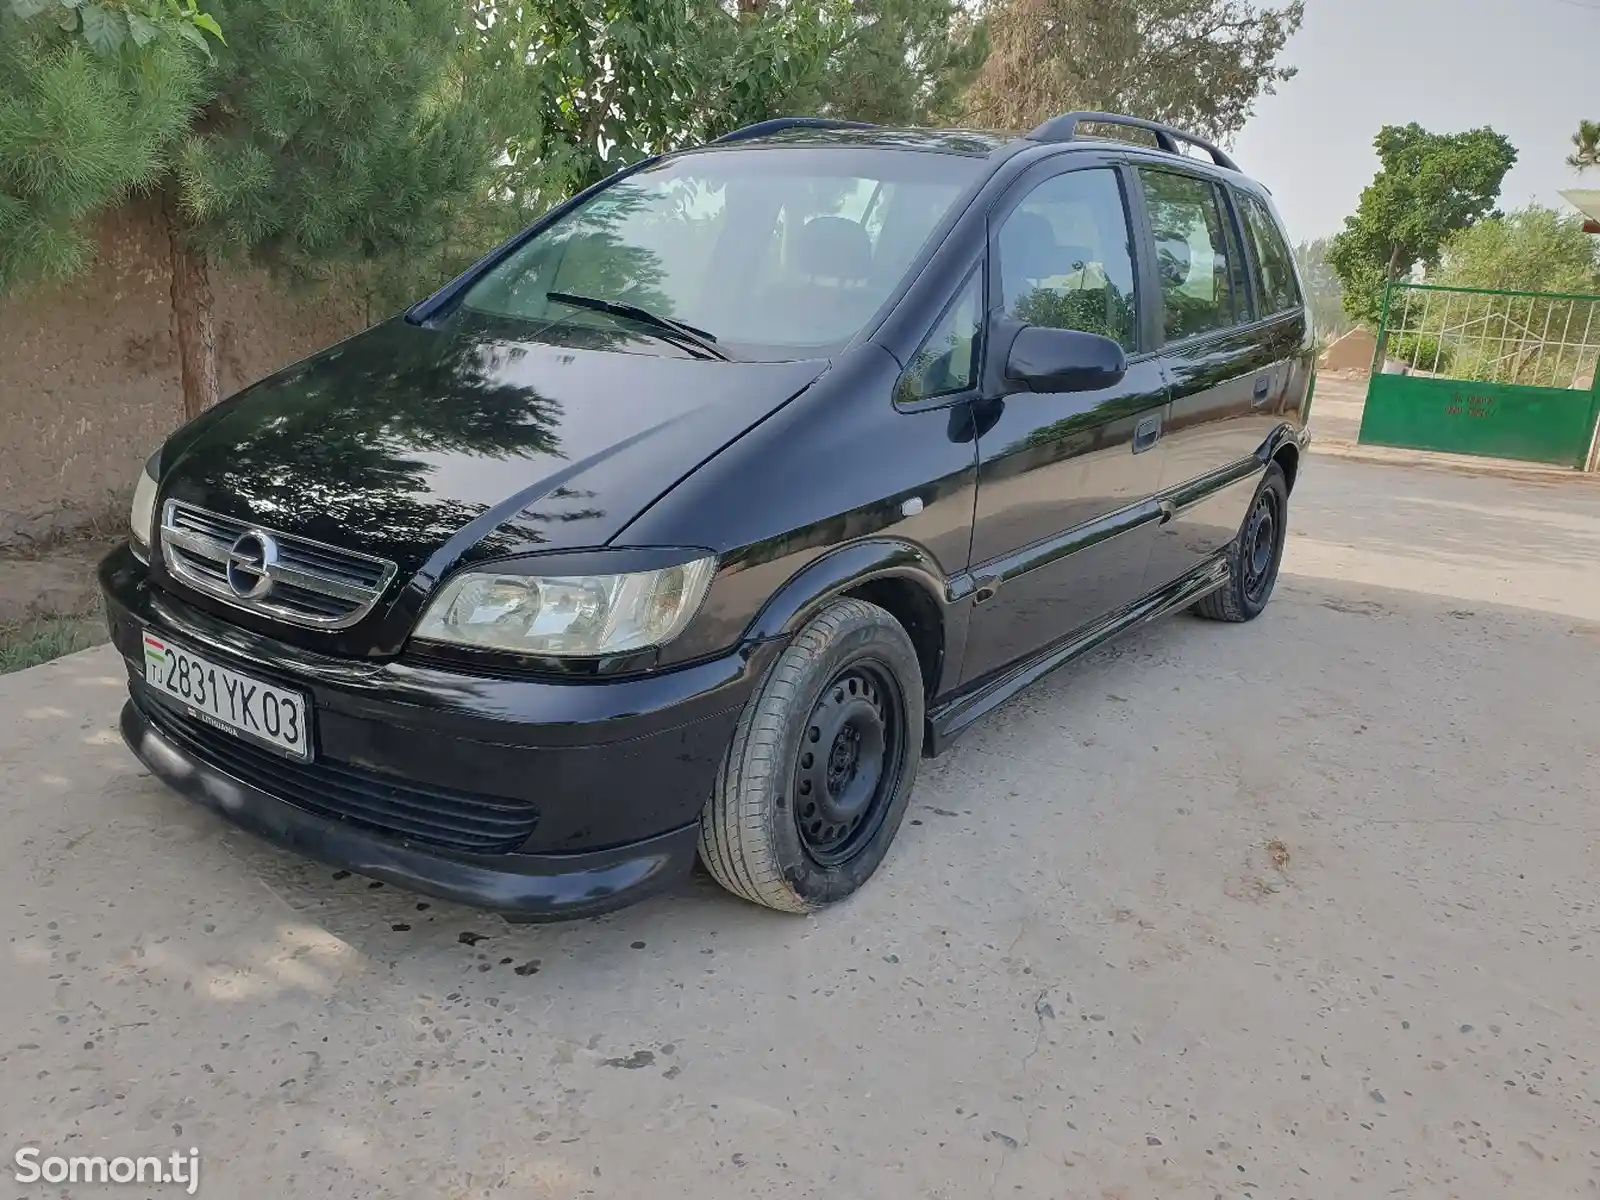 Opel Zafira, 1999-3